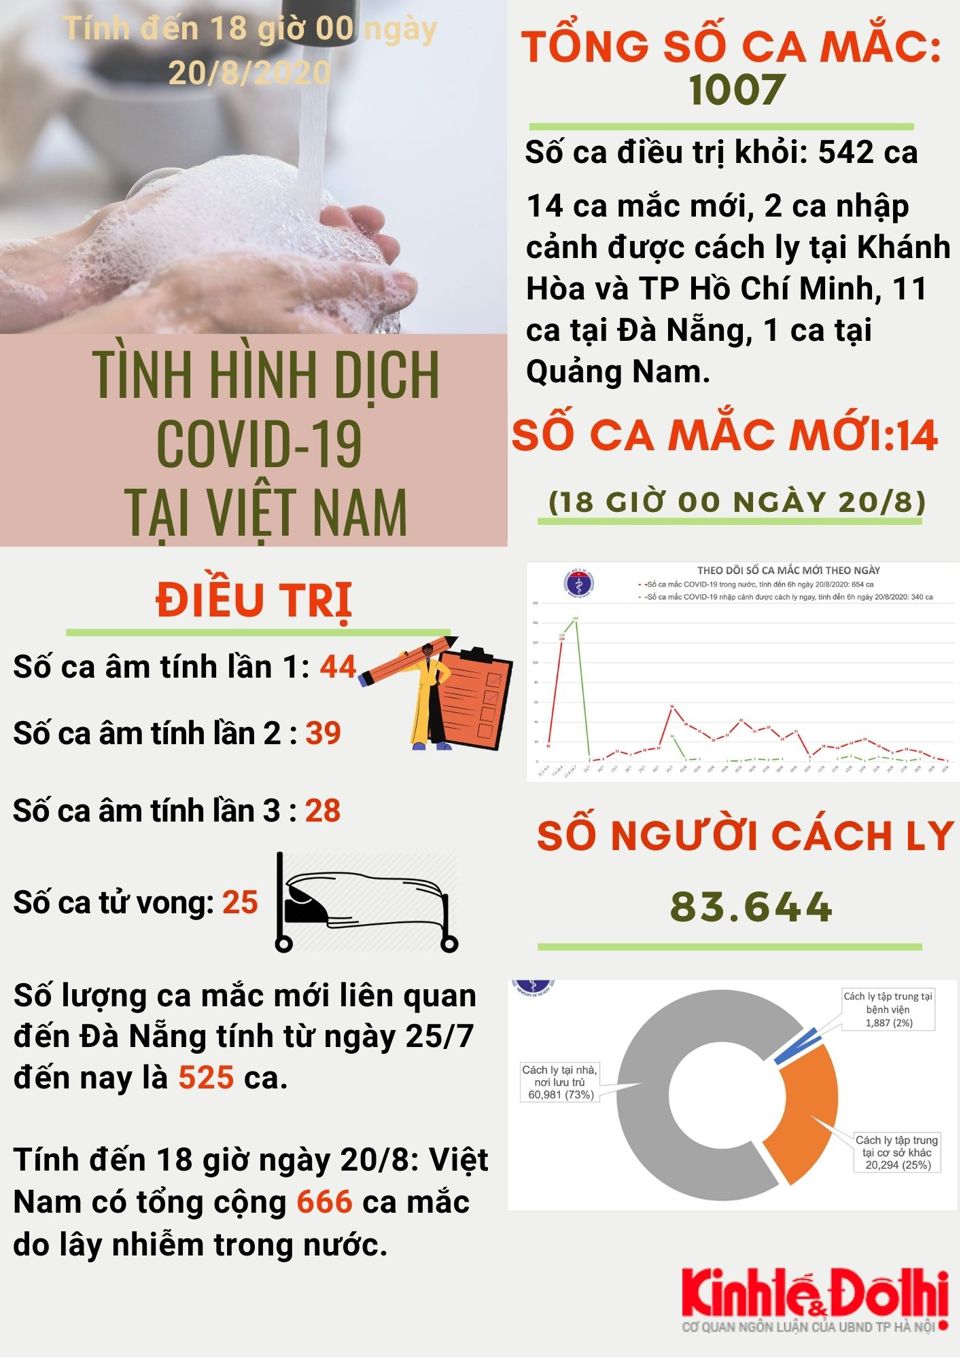 [Infographic] Việt Nam vượt mốc 1000 ca mắc Covid-19 - Ảnh 1